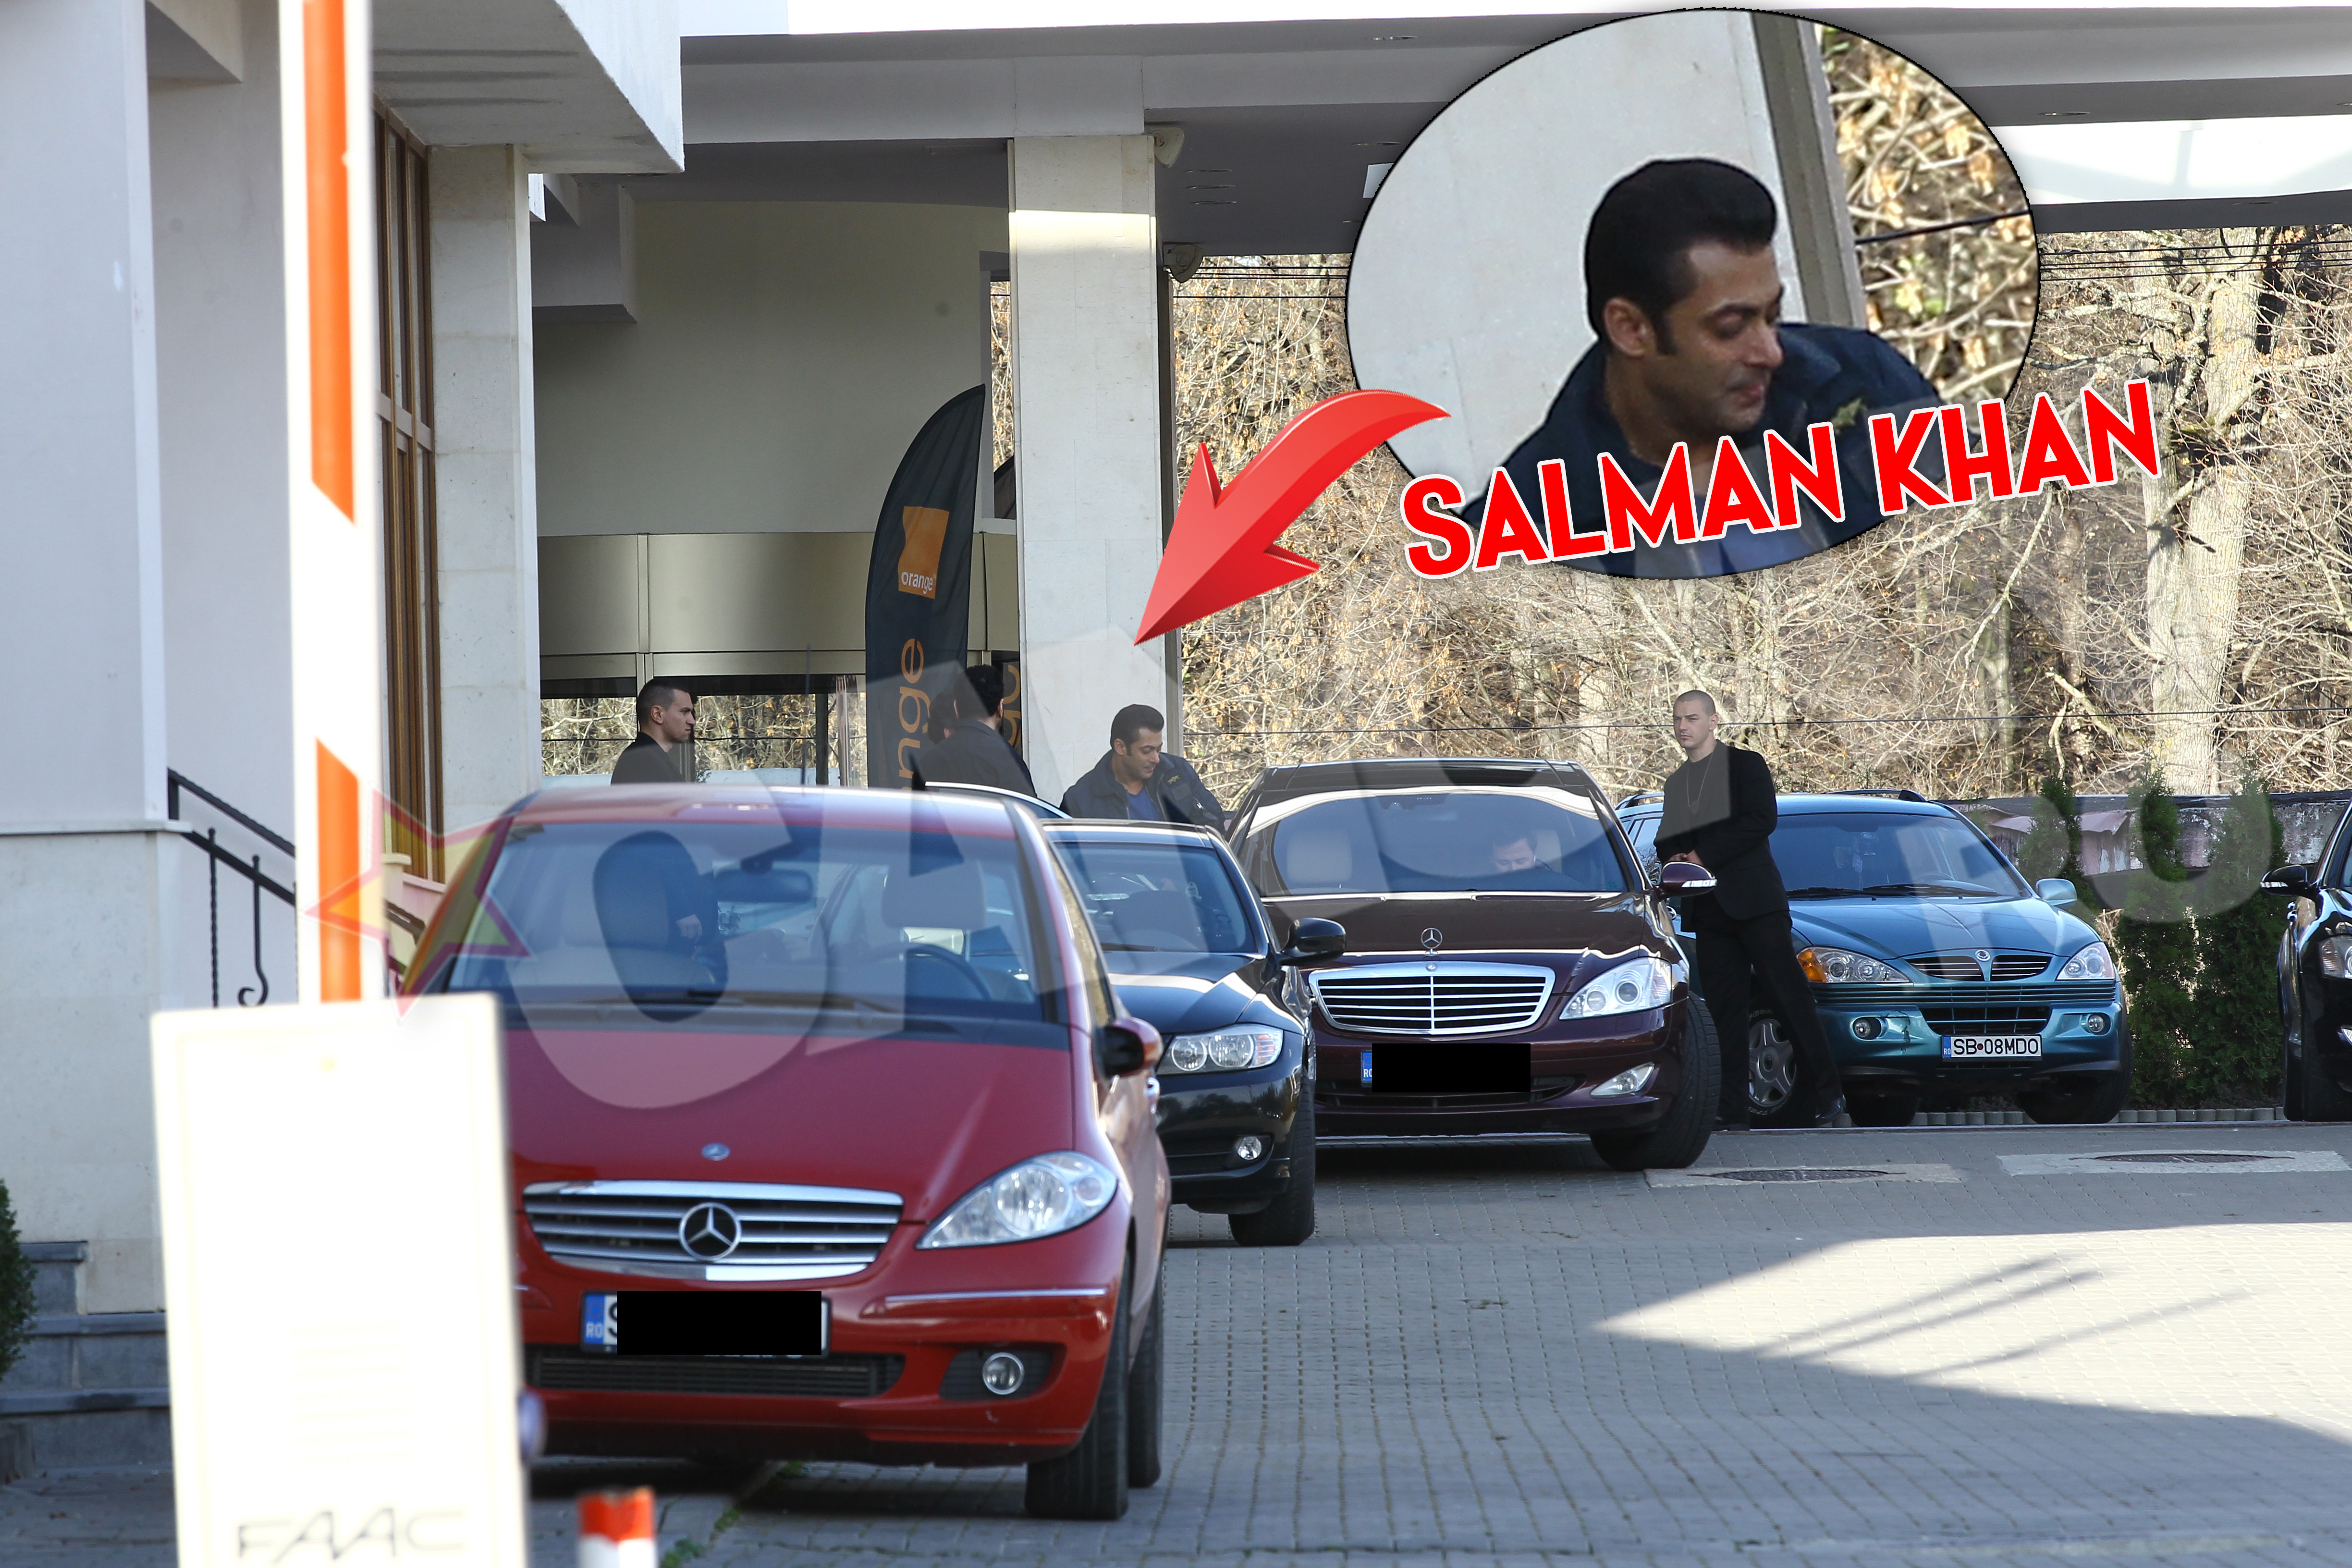 In jurul orei 10, Salman se pregateste pentru o noua runda de filmari